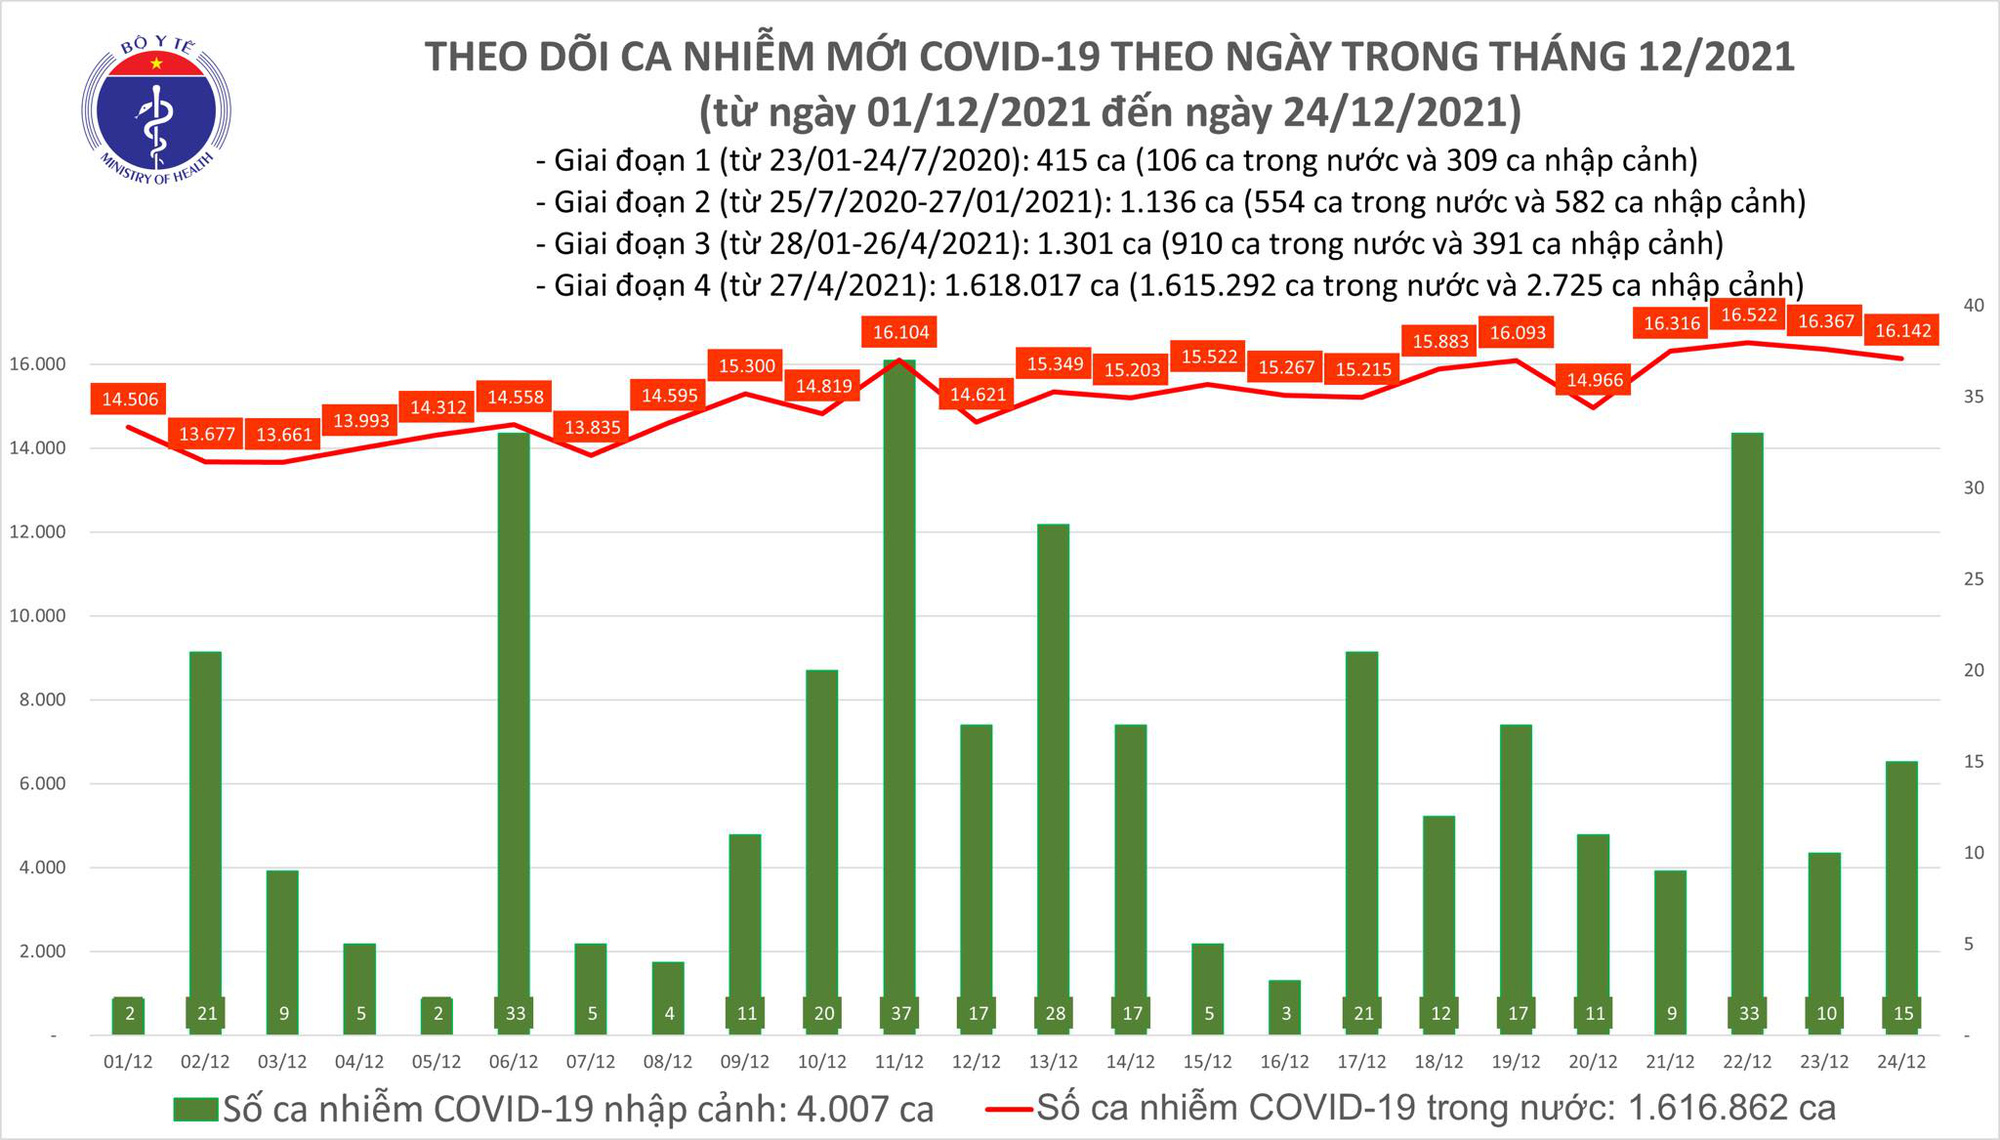 Ngày 24/12: Có 16.157 ca mắc COVID-19 tại 62 tỉnh, thành; Hà Nội vẫn nhiều nhất với 1.834 ca - Ảnh 1.